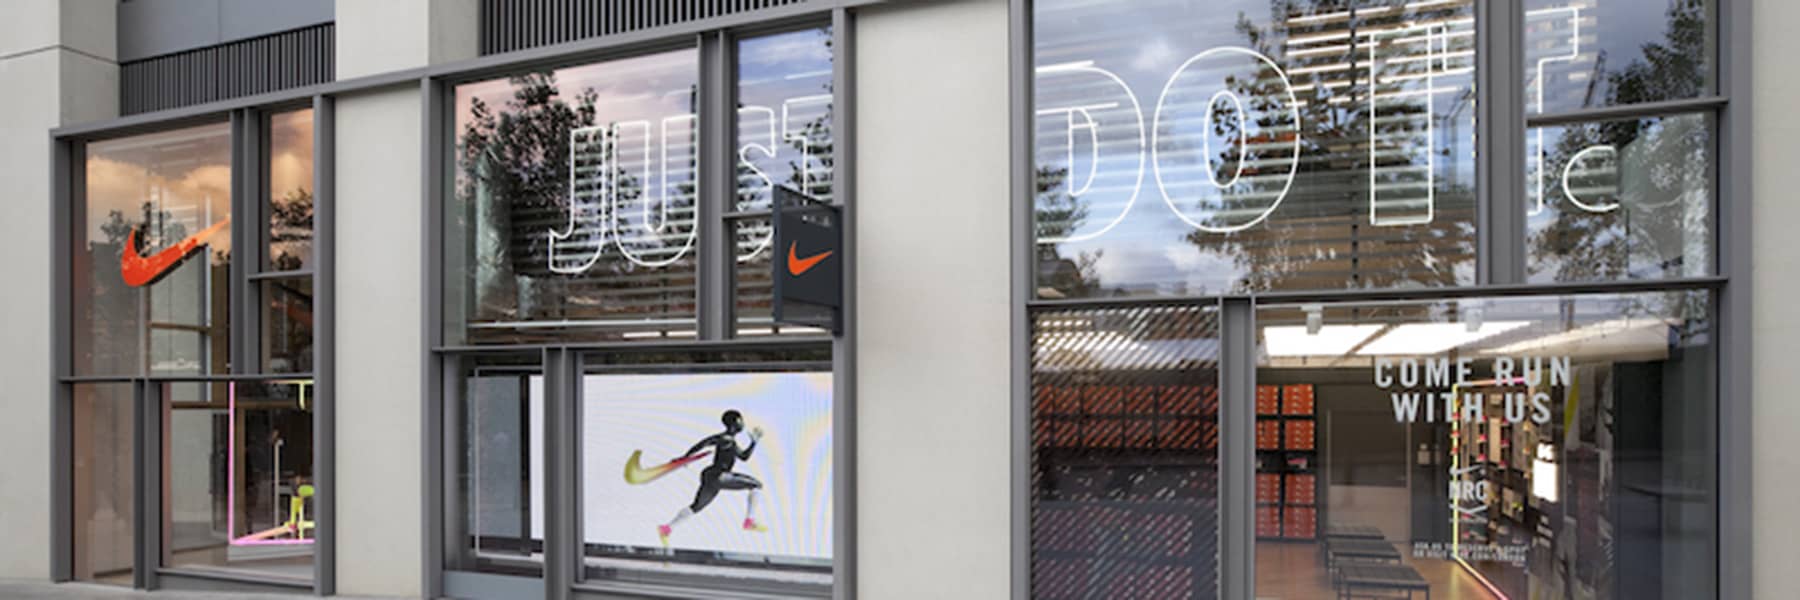 En segundo lugar Tiempo de día Detectable Nike Stores in United Kingdom. Nike.com